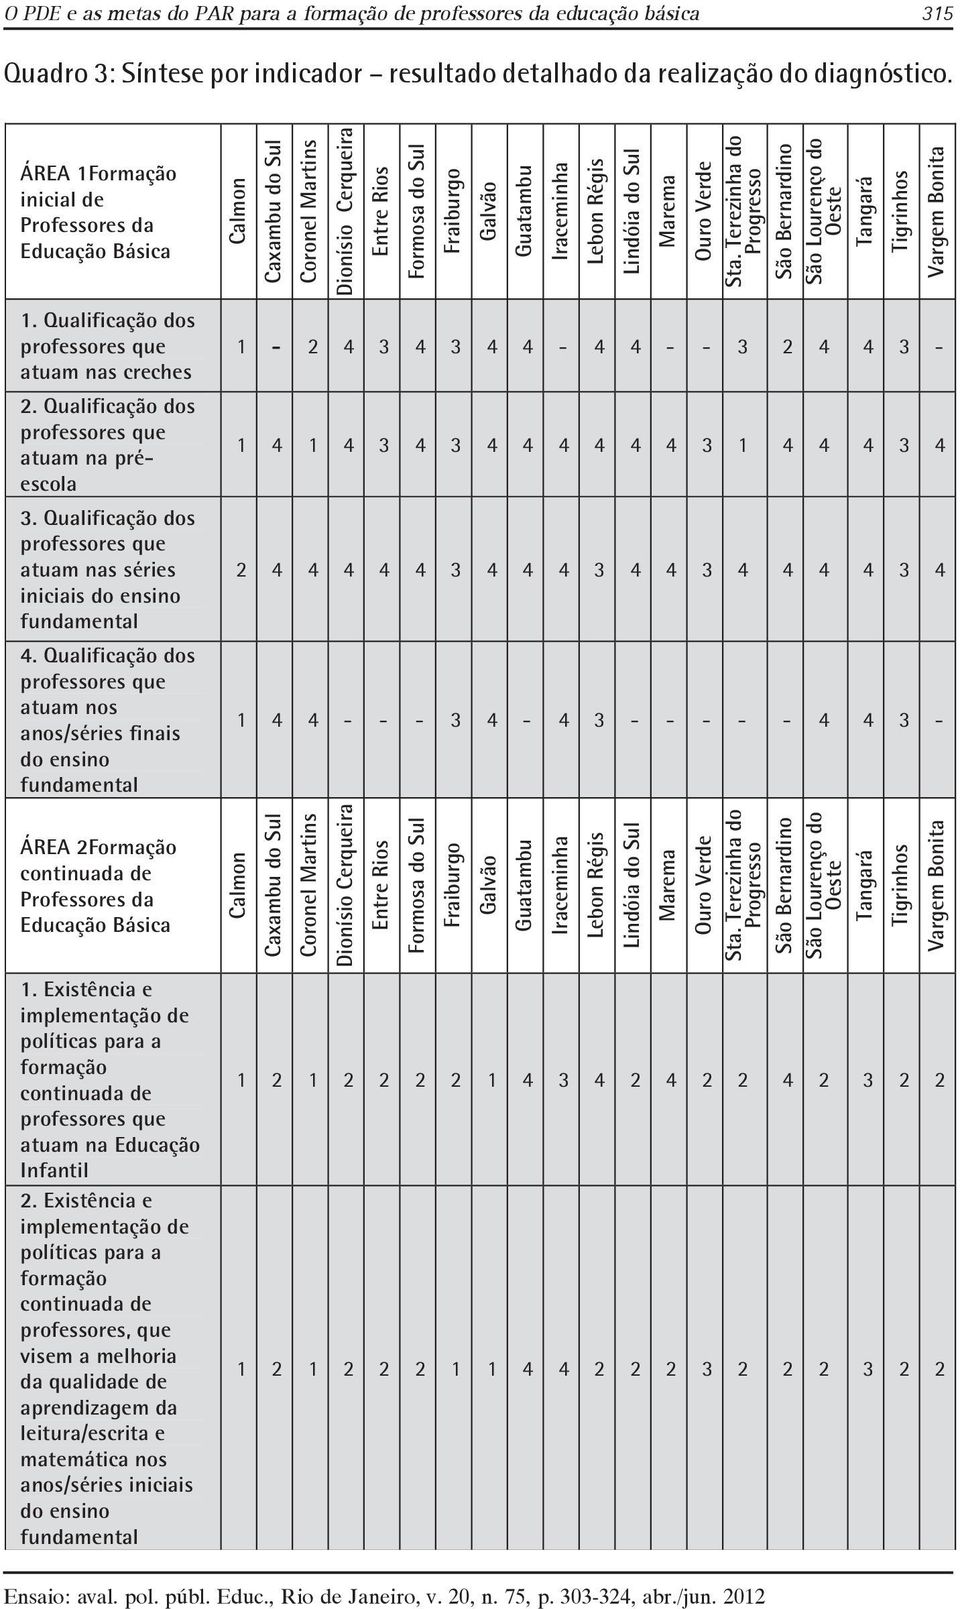 Qualificação dos professores que atuam nas séries iniciais do ensino fundamental 4.